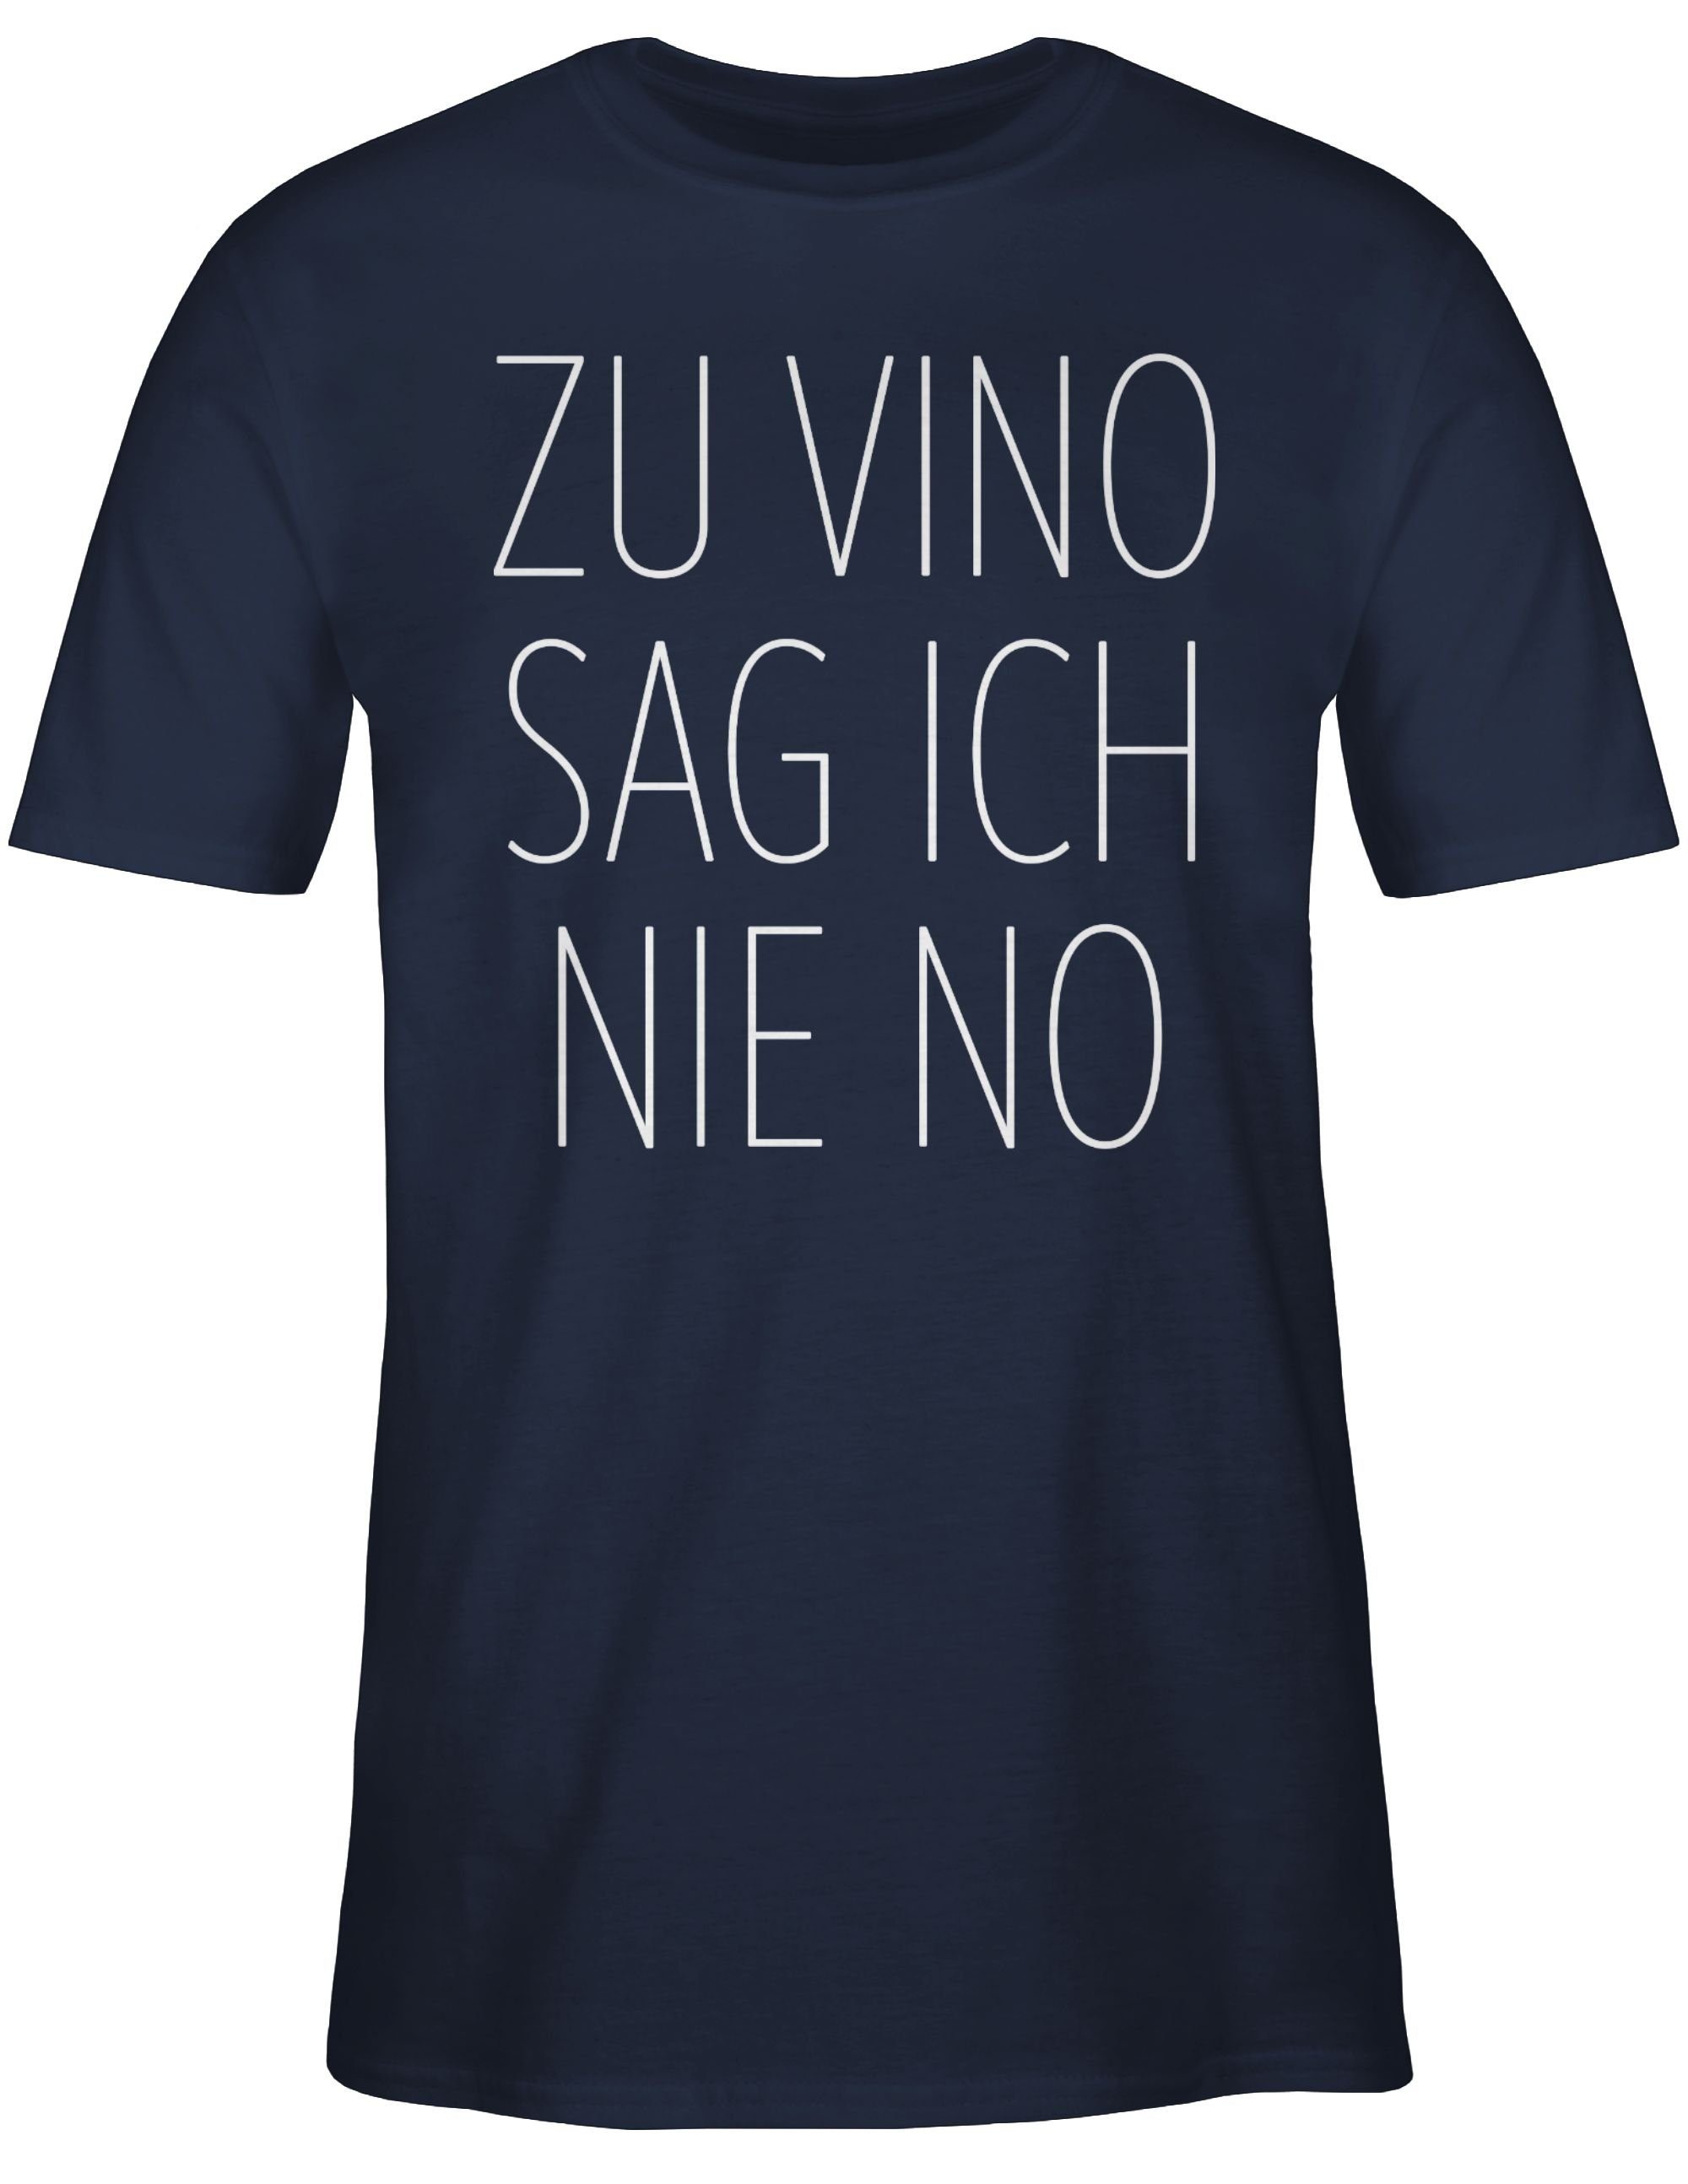 T-Shirt weiß 03 Sprüche Statement Blau nie Navy ich Zu No sag Shirtracer mit Vino Spruch